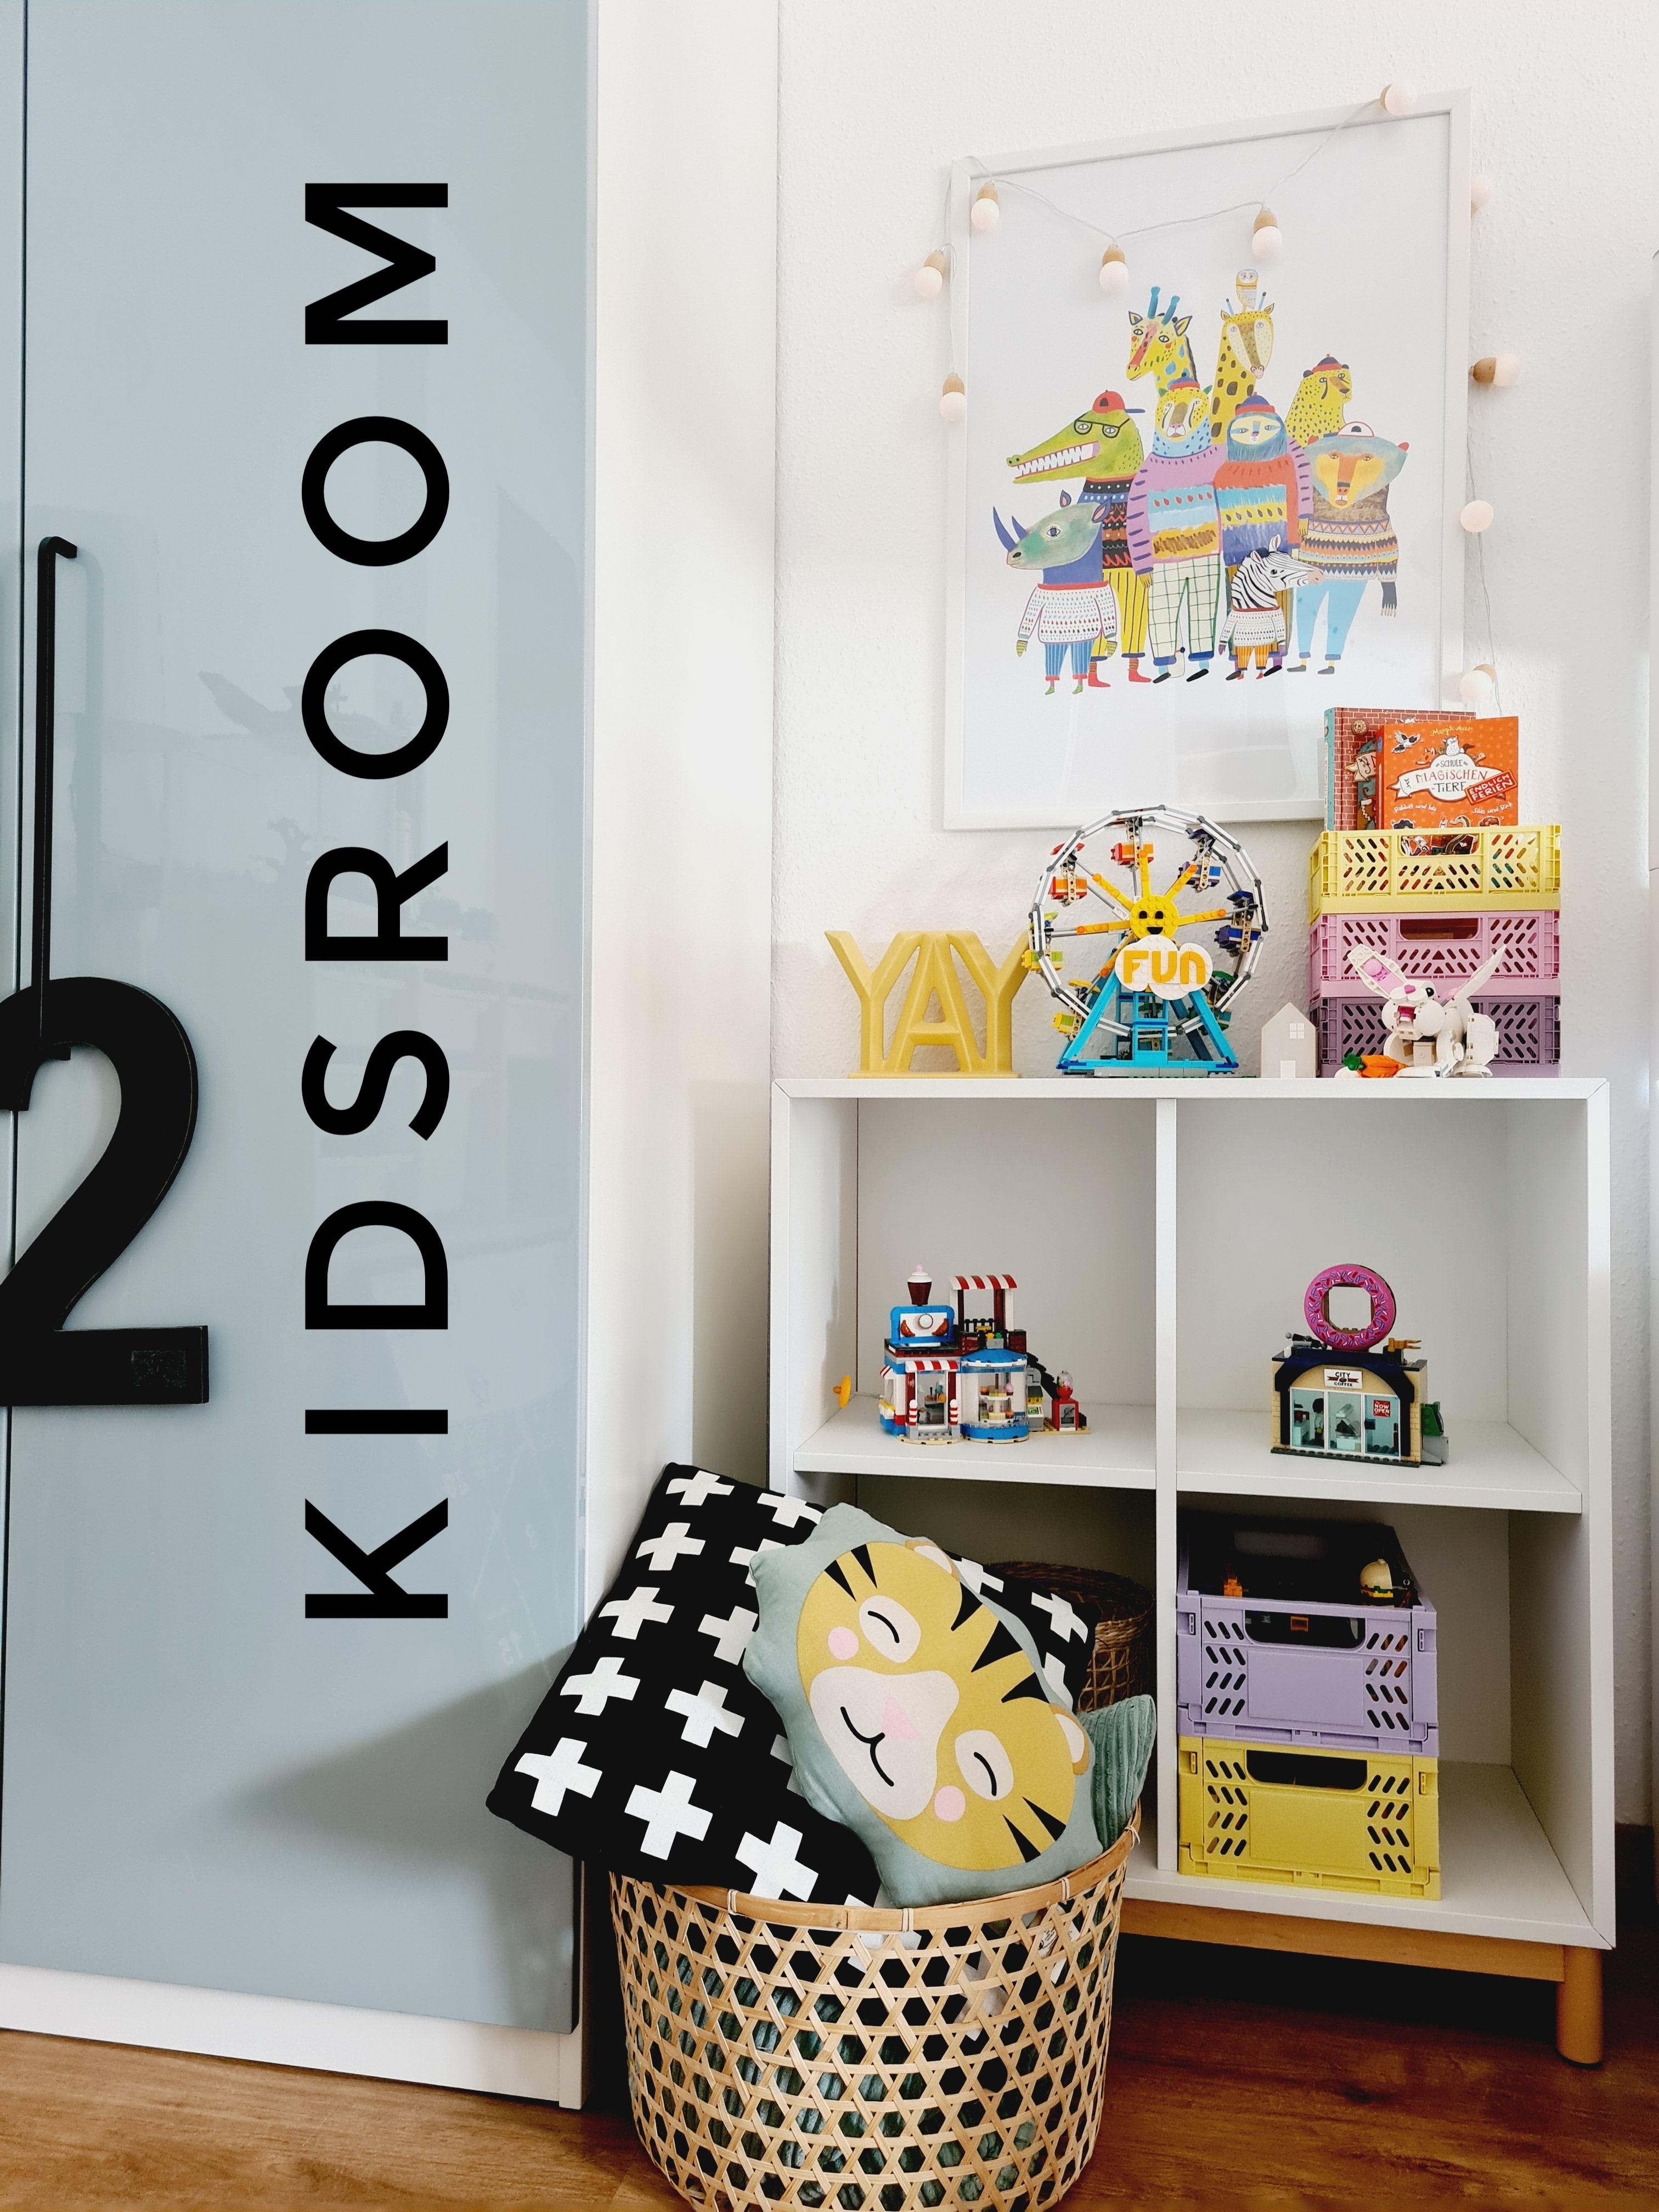 Kleiner Einblick in eine Ecke im Kinderzimmer
#kinderzimmer #solebenwir #einrichtenmitikea #meinikea